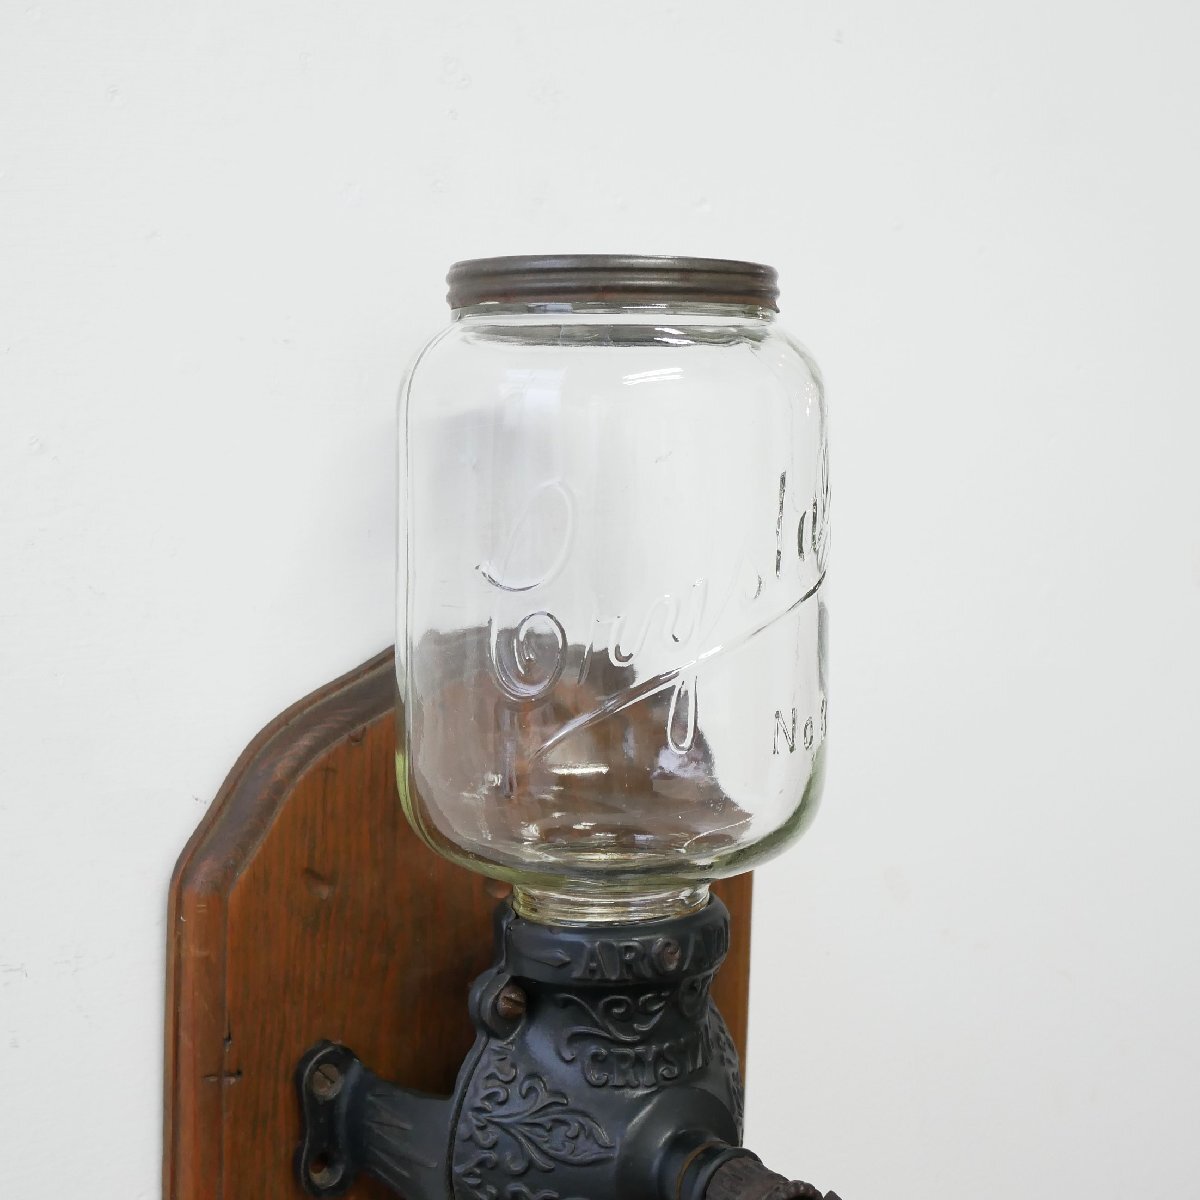 1900's アメリカ アンティーク コーヒーグラインダー Crystal No3 / ミル カフェ ディスプレイ小物 キッチン雑貨 #506-62-811_画像2